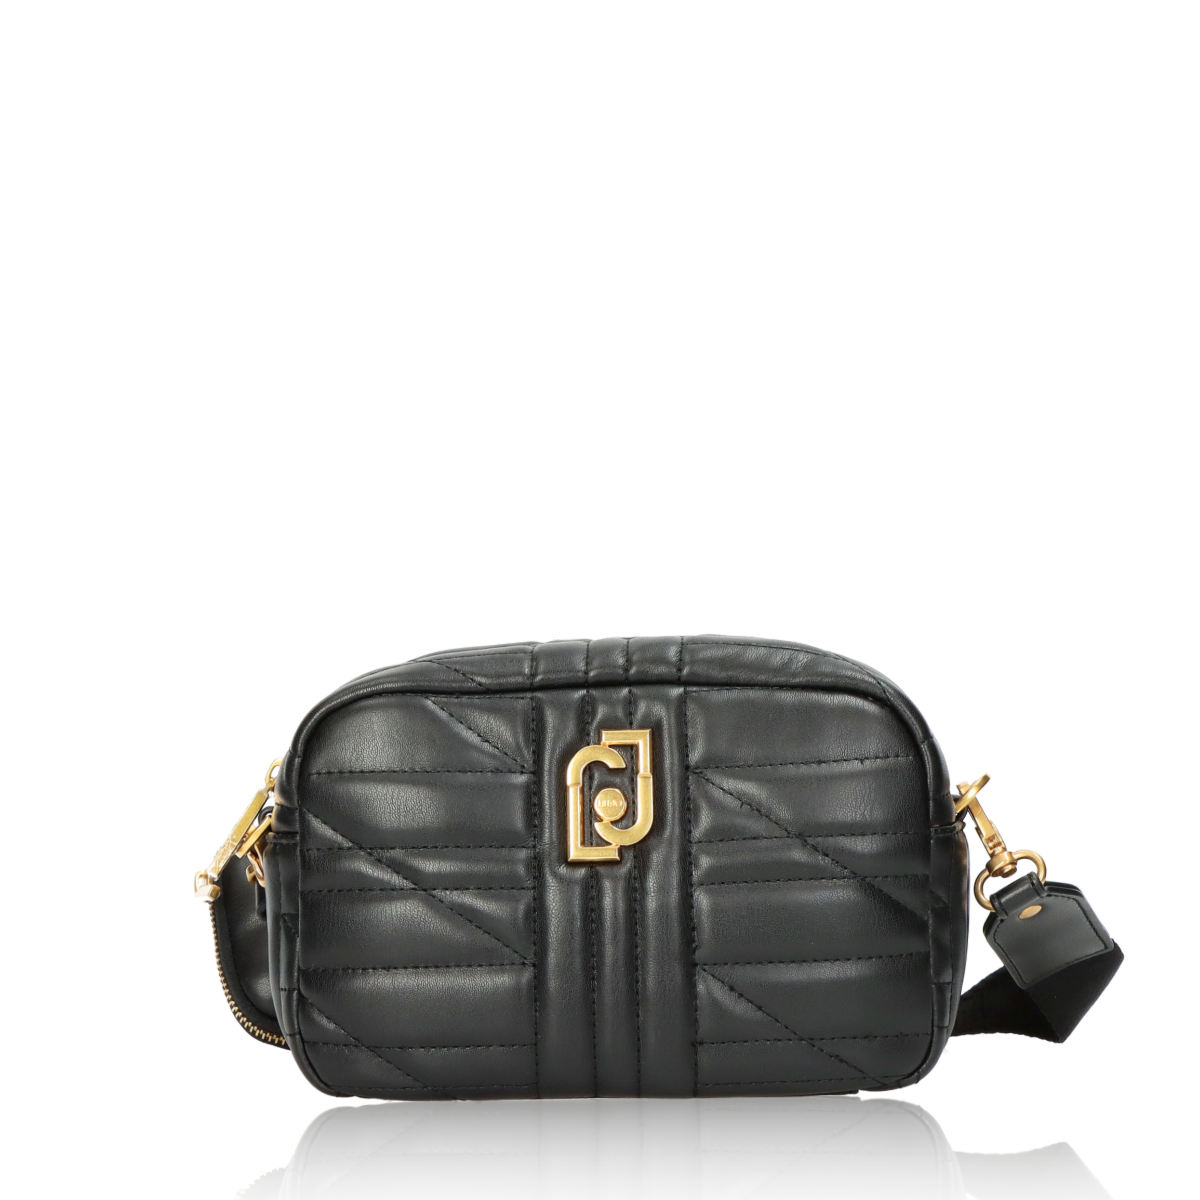 Liu Jo women's fashion handbag - black